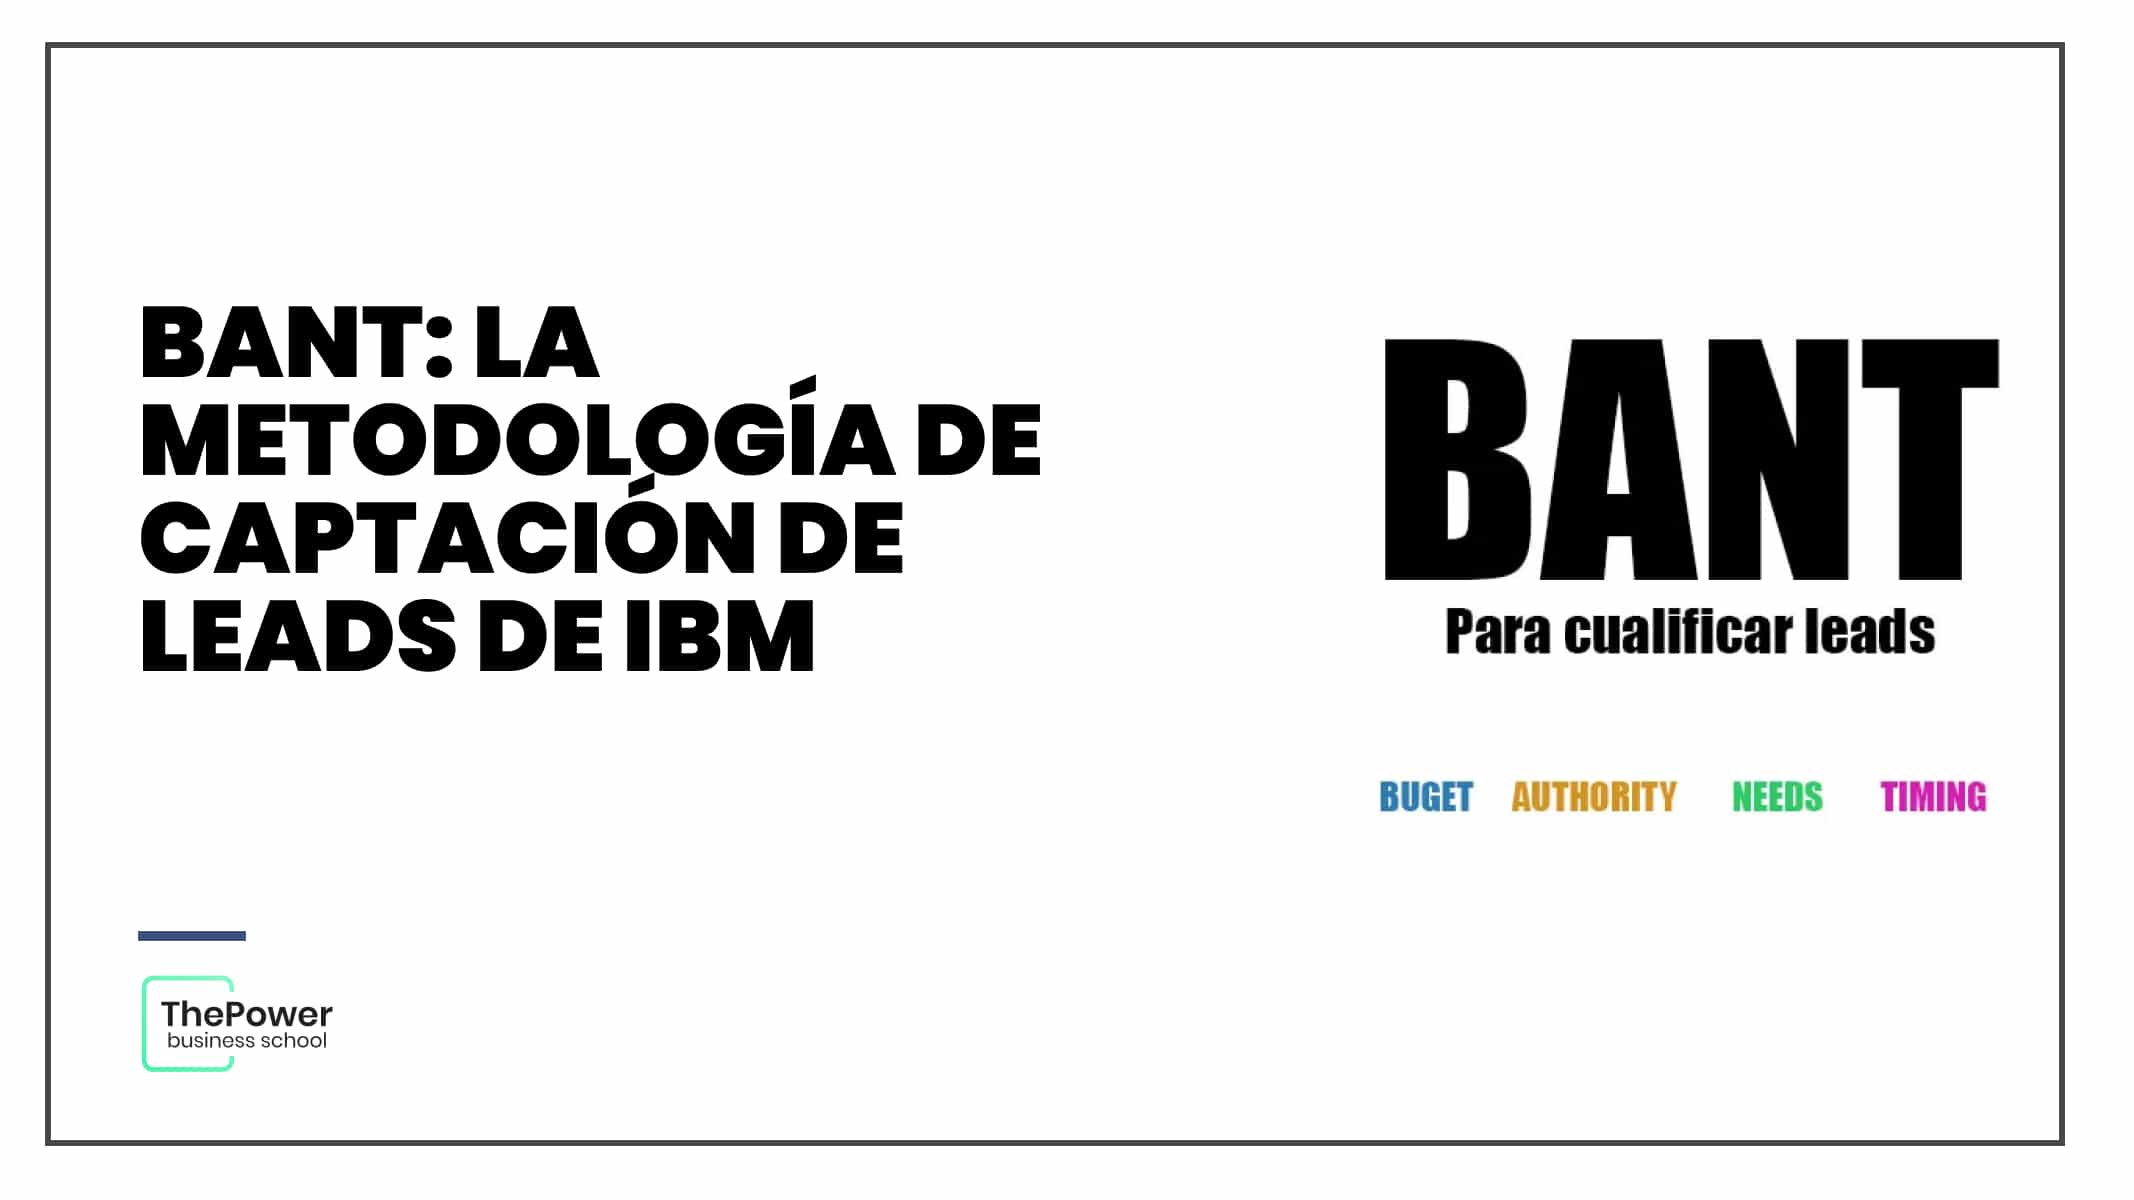 BANT: la metodología de captación de leads de IBM